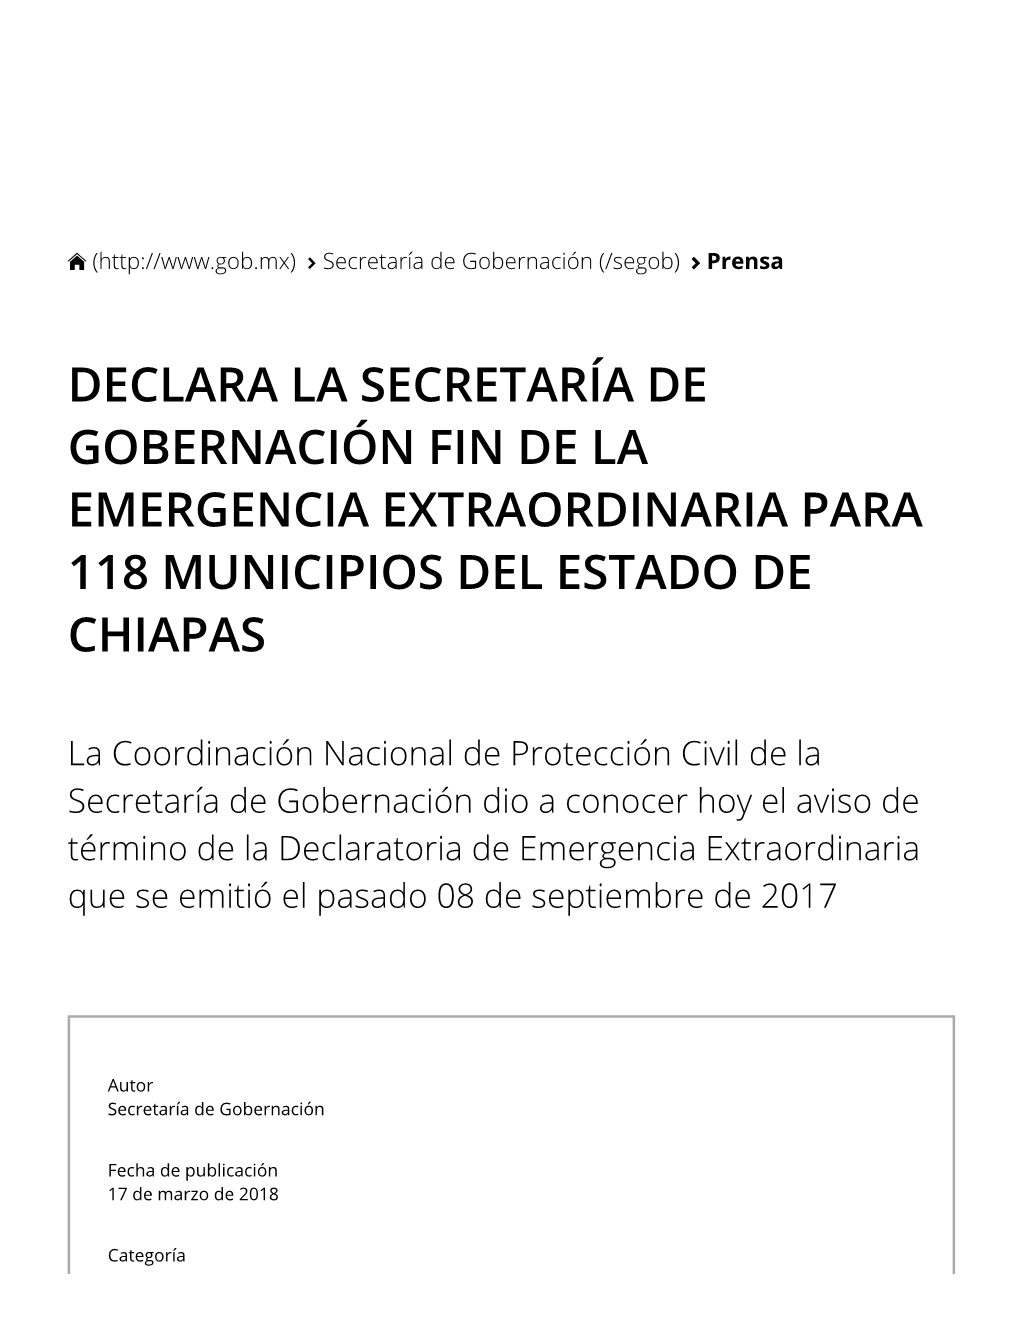 Declara La Secretaría De Gobernación Fin De La Emergencia Extraordinaria Para 118 Municipios Del Estado De Chiapas